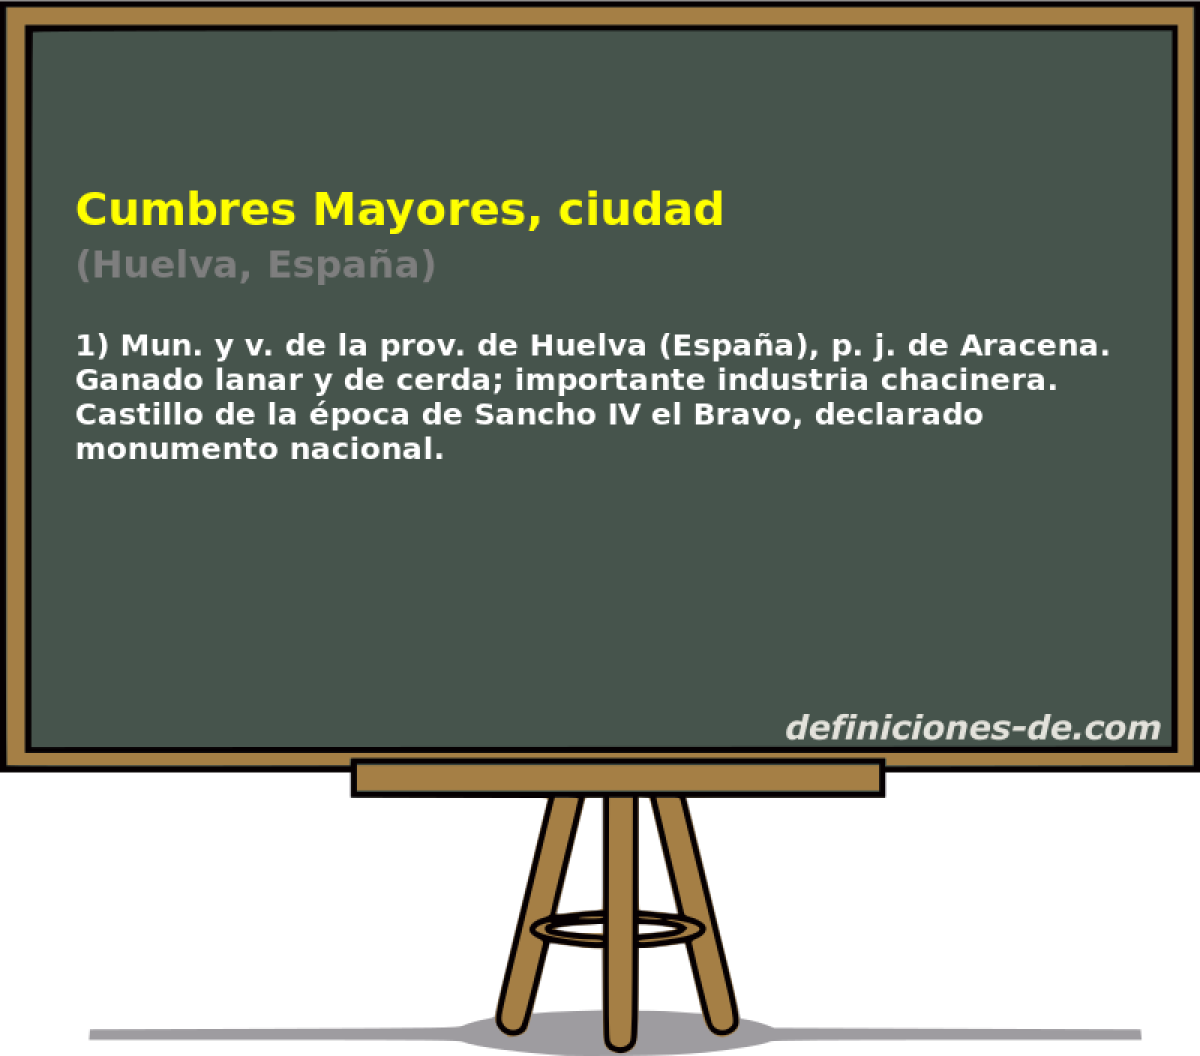 Cumbres Mayores, ciudad (Huelva, Espaa)